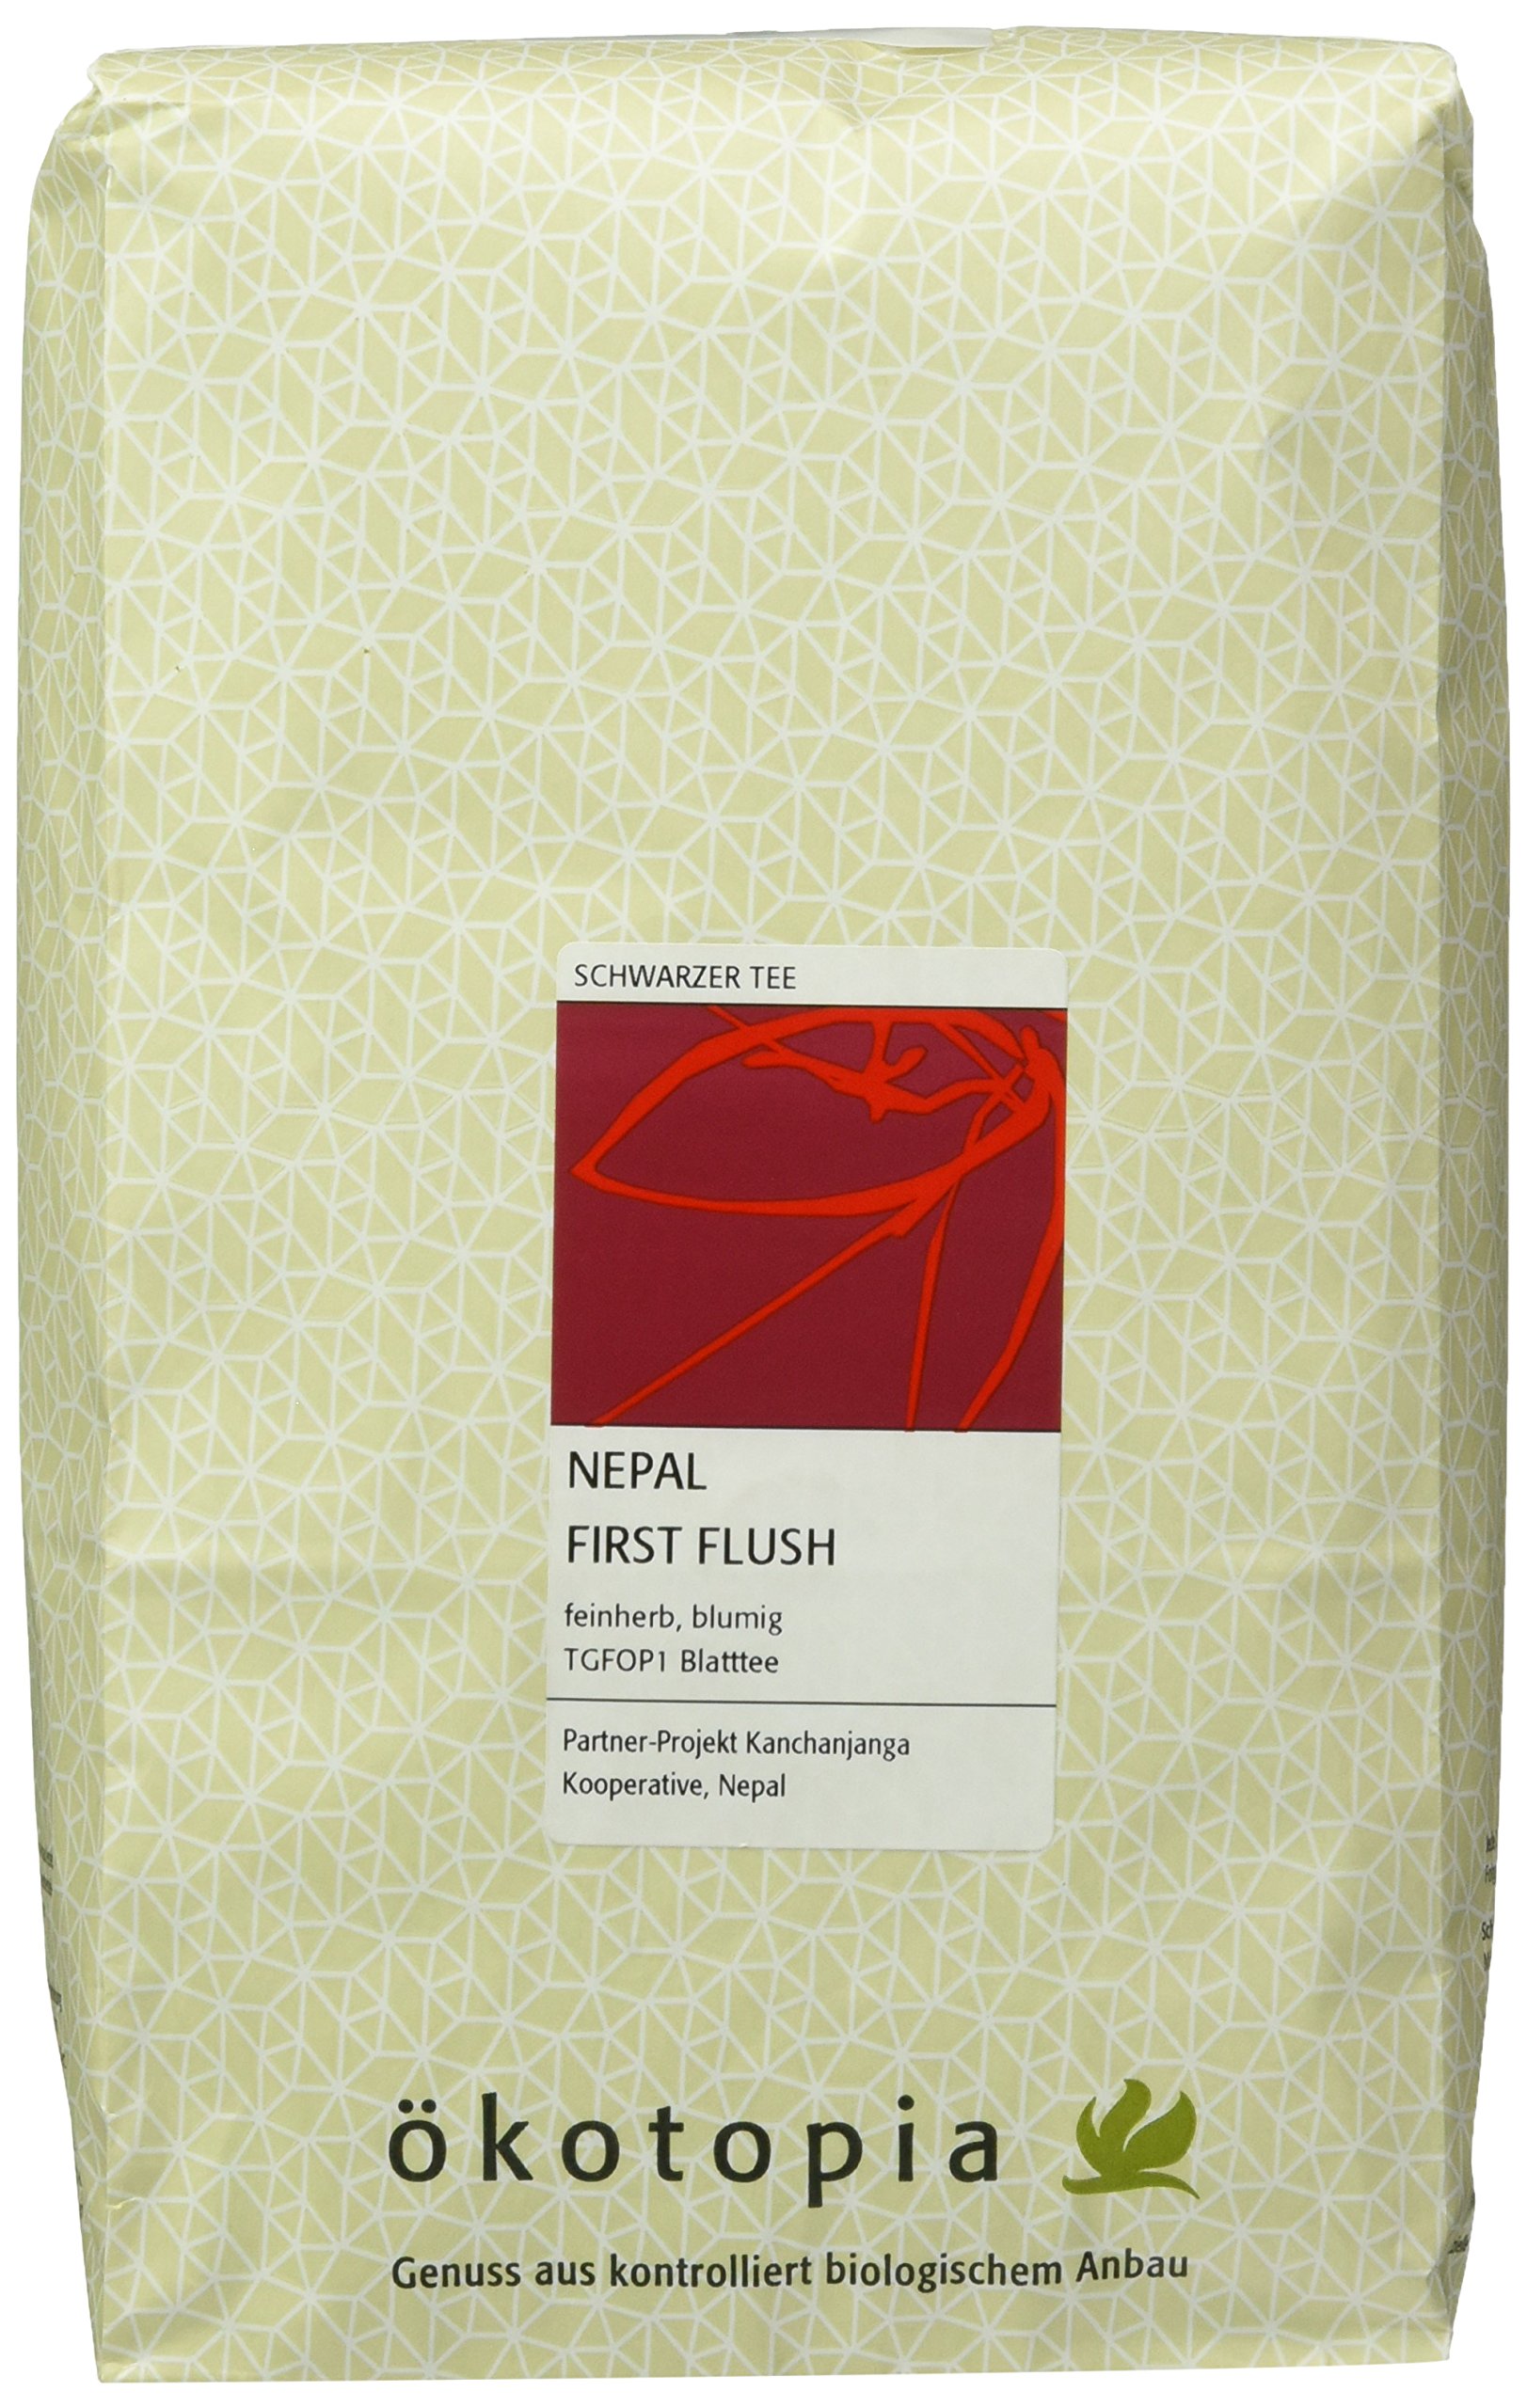 Ökotopia Schwarzer Tee Nepal First Flush, 1er Pack (1 x 1000 g)